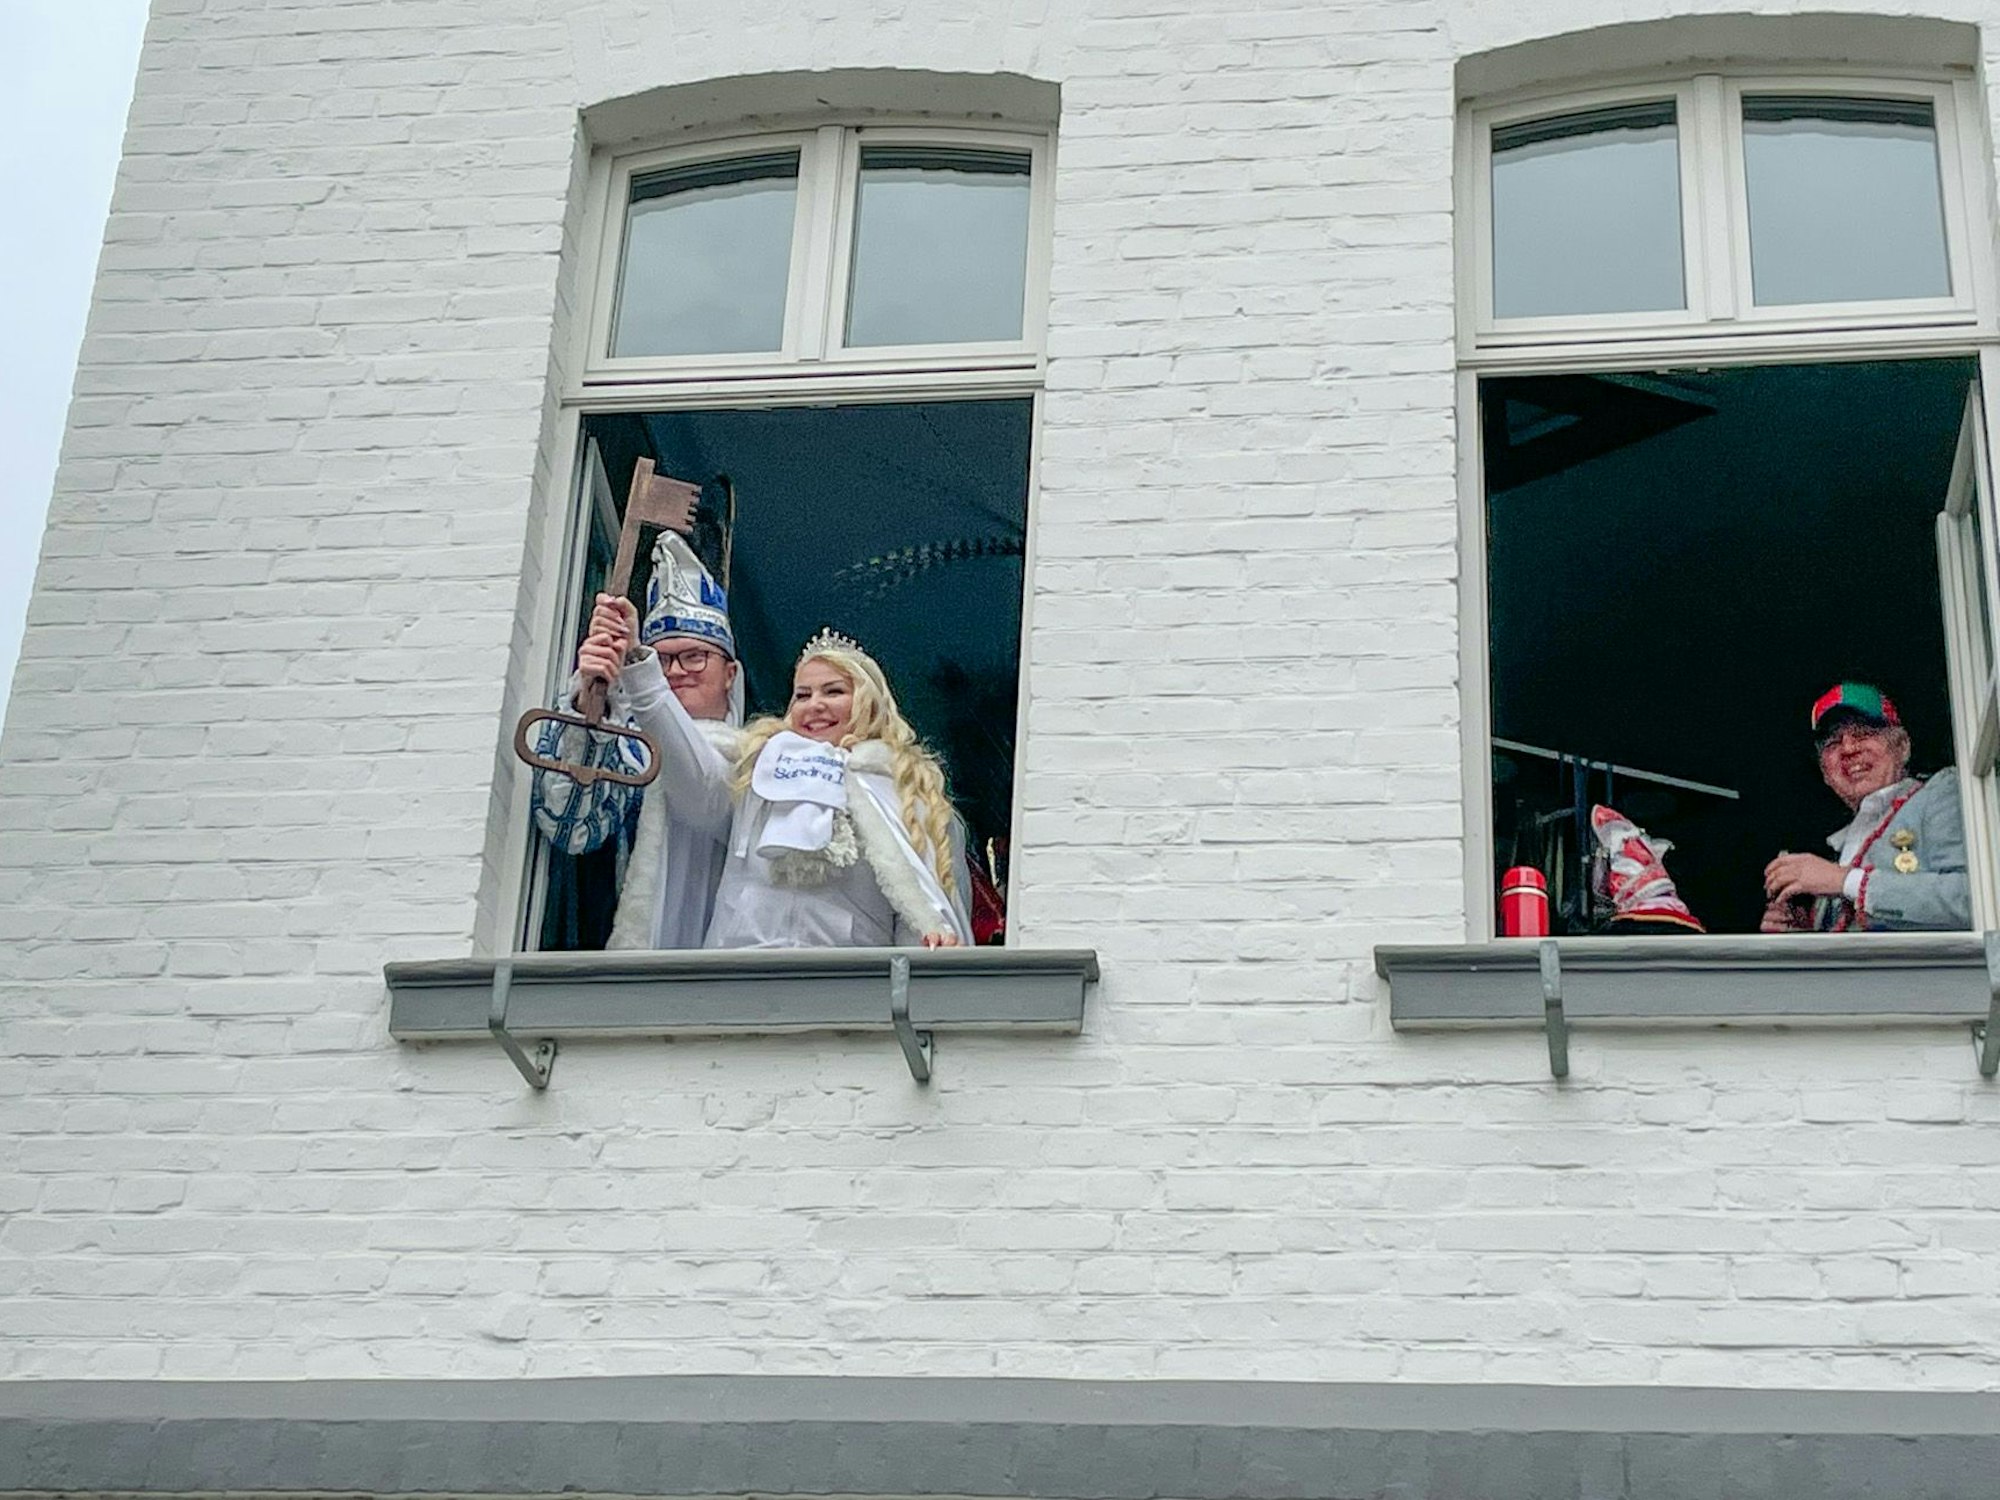 Marco I. und Sandra I. aus Blecher halten den Stadtschlüssel aus dem Rathausfenster. Bürgermeister Robert Lennerts steht an einem anderen Fenster und lächelt.